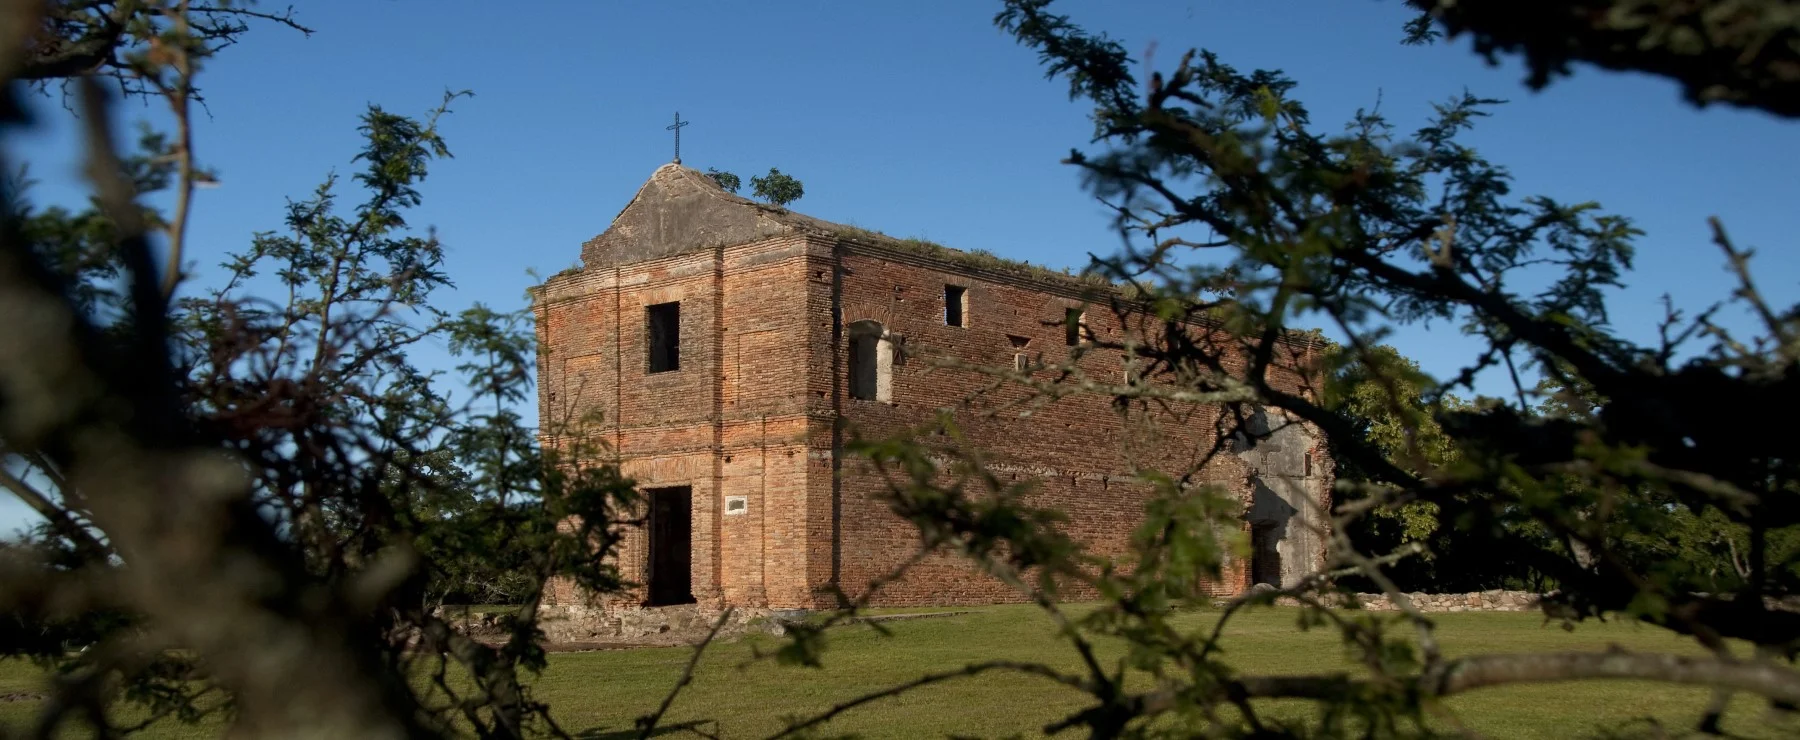 Calera de las Huerfanas Building Jesuite Ruins , Carmelo, Uruguay - Atelier South America